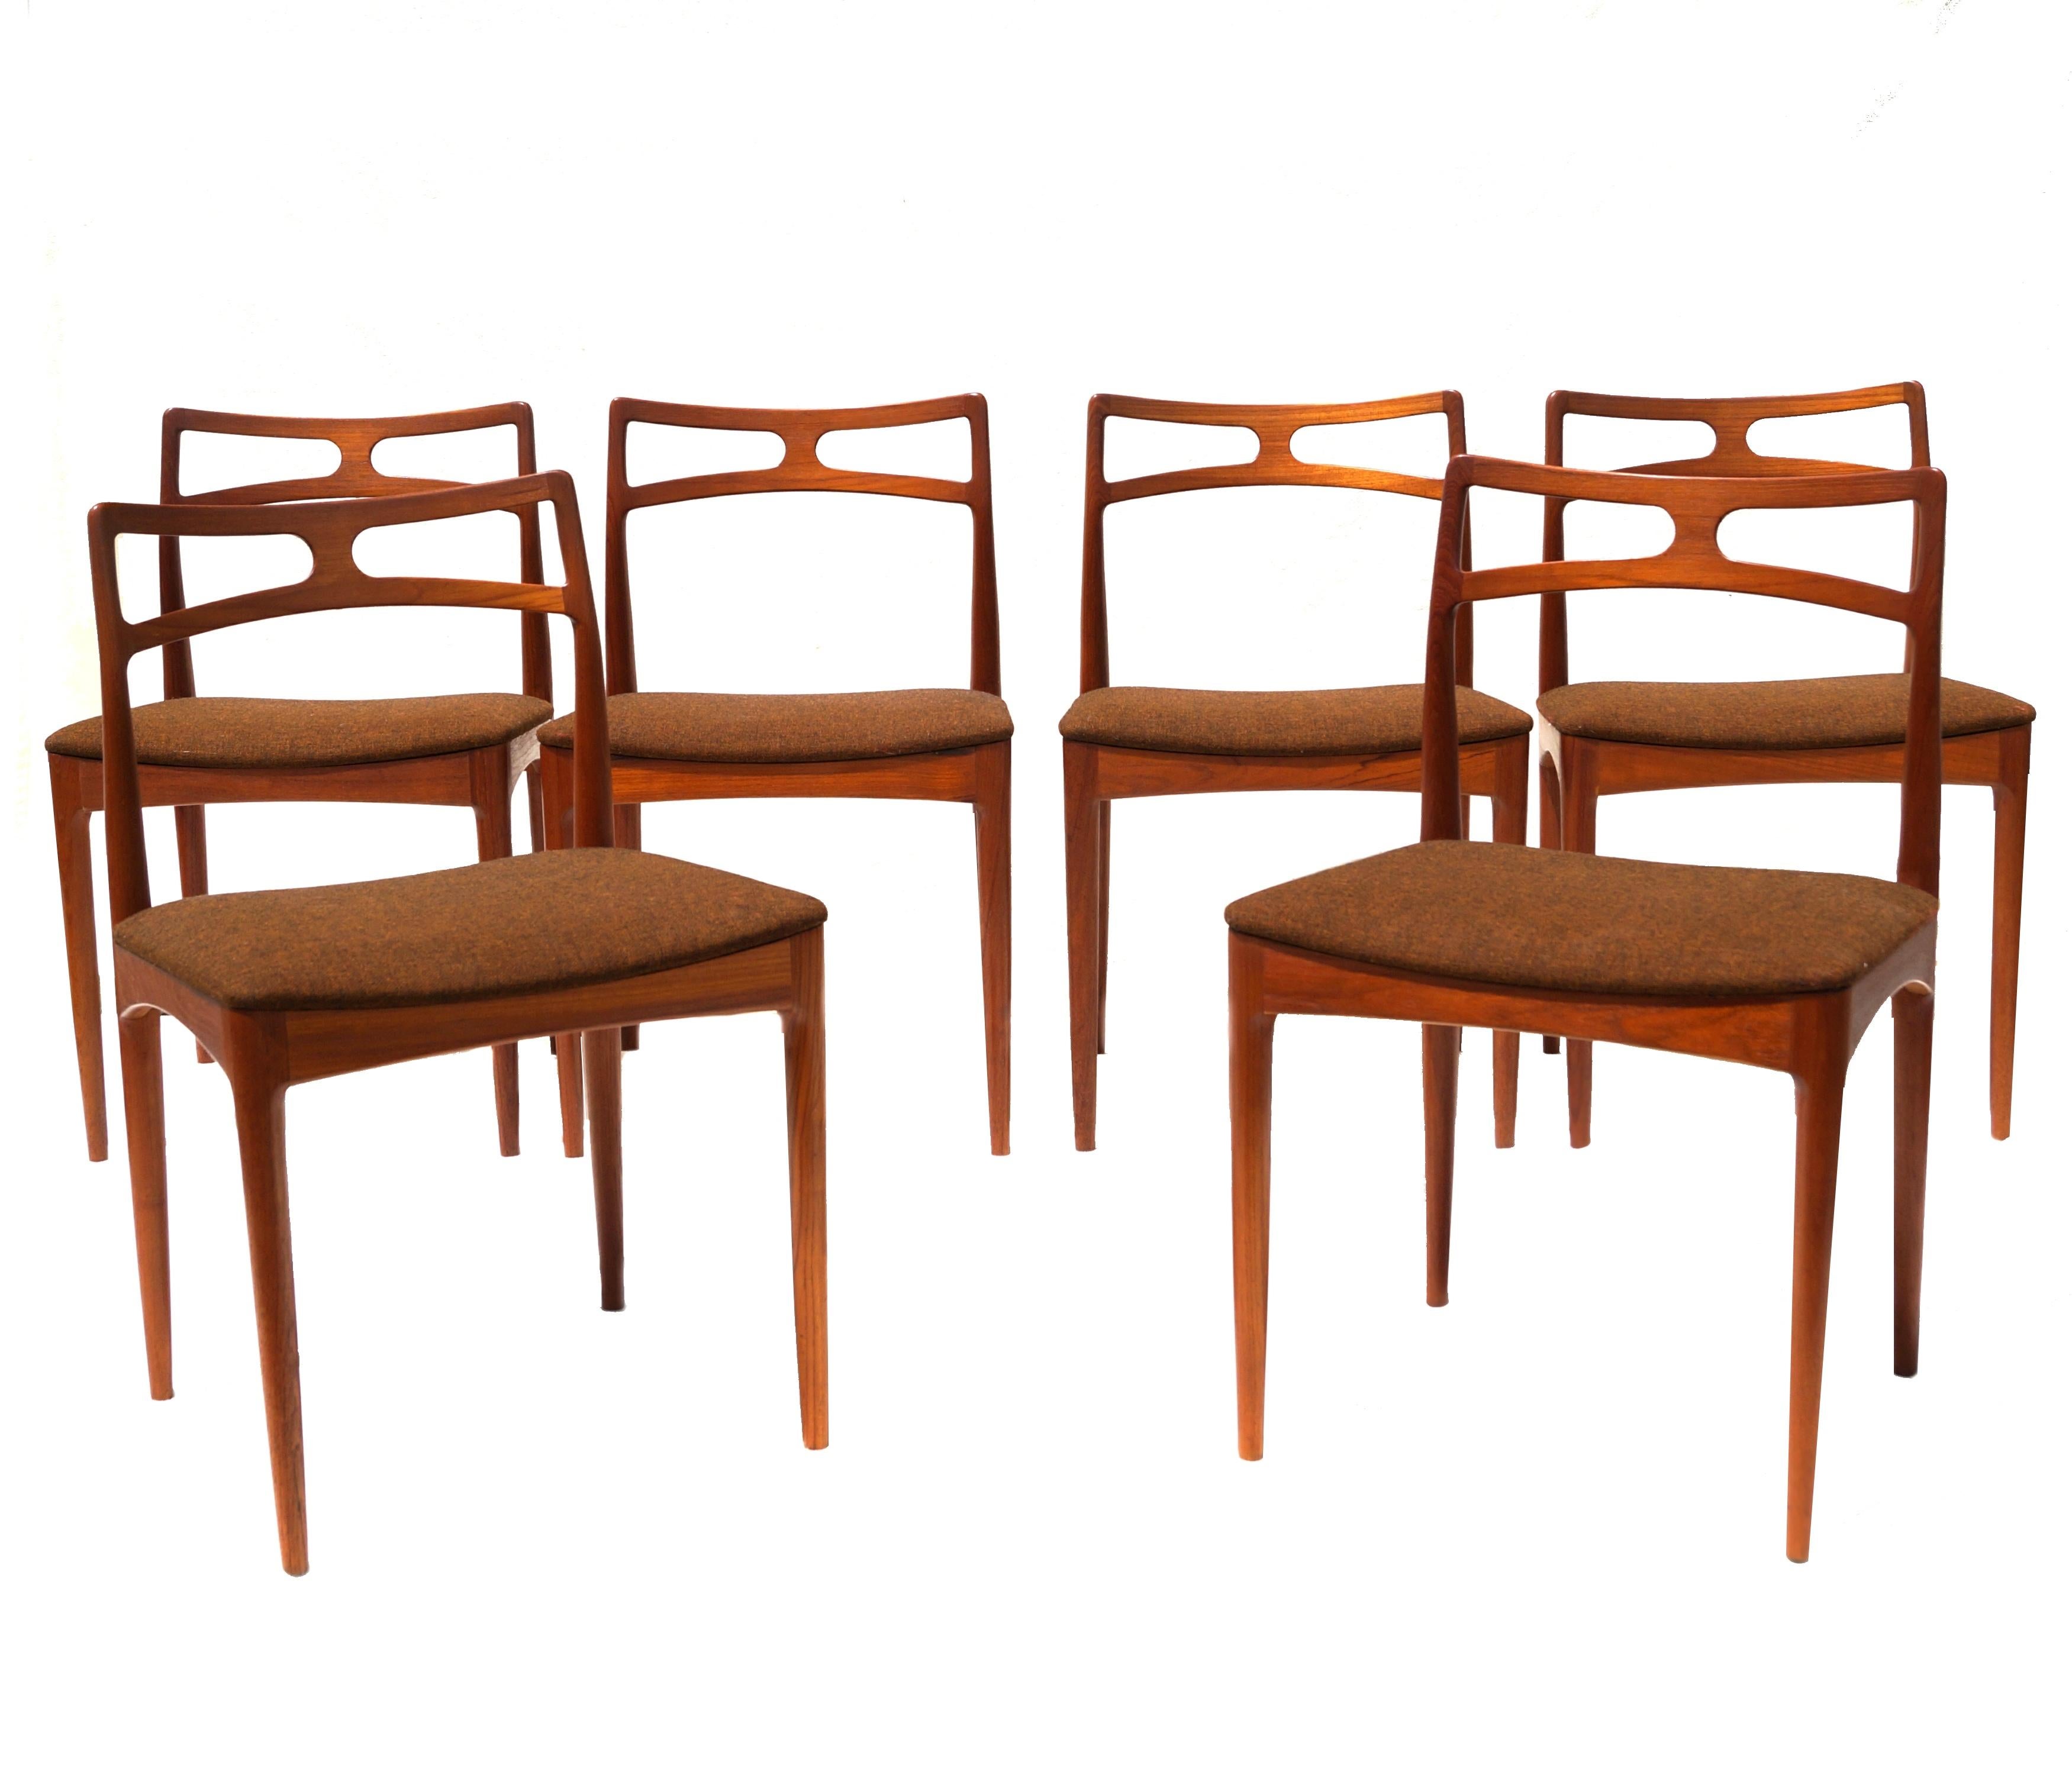 Ensemble de 6 chaises de salle à manger Johannes Andersen fabriquées par Christian Linnebergs Møbelfabrik Teck Danish Modern, Danemark.
Si vous vous trouvez dans la zone métropolitaine du New Jersey et de New York, veuillez nous contacter en